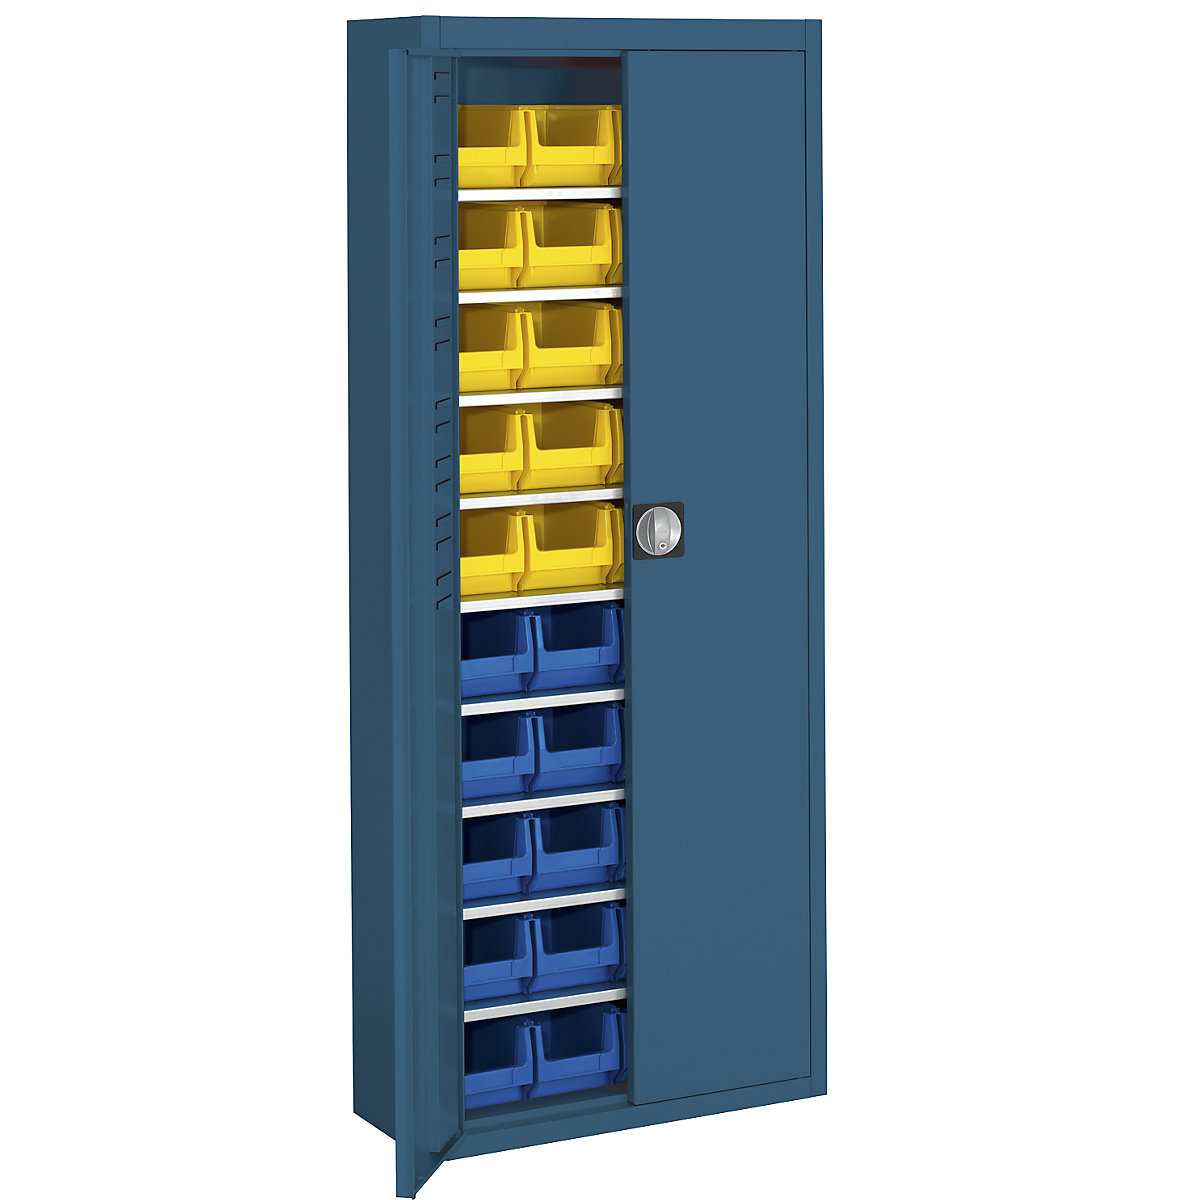 Raktári szekrény nyitott tárolódobozokkal – mauser, ma x szé x mé 1740 x 680 x 280 mm, egyszínű, kék, 40 doboz-1